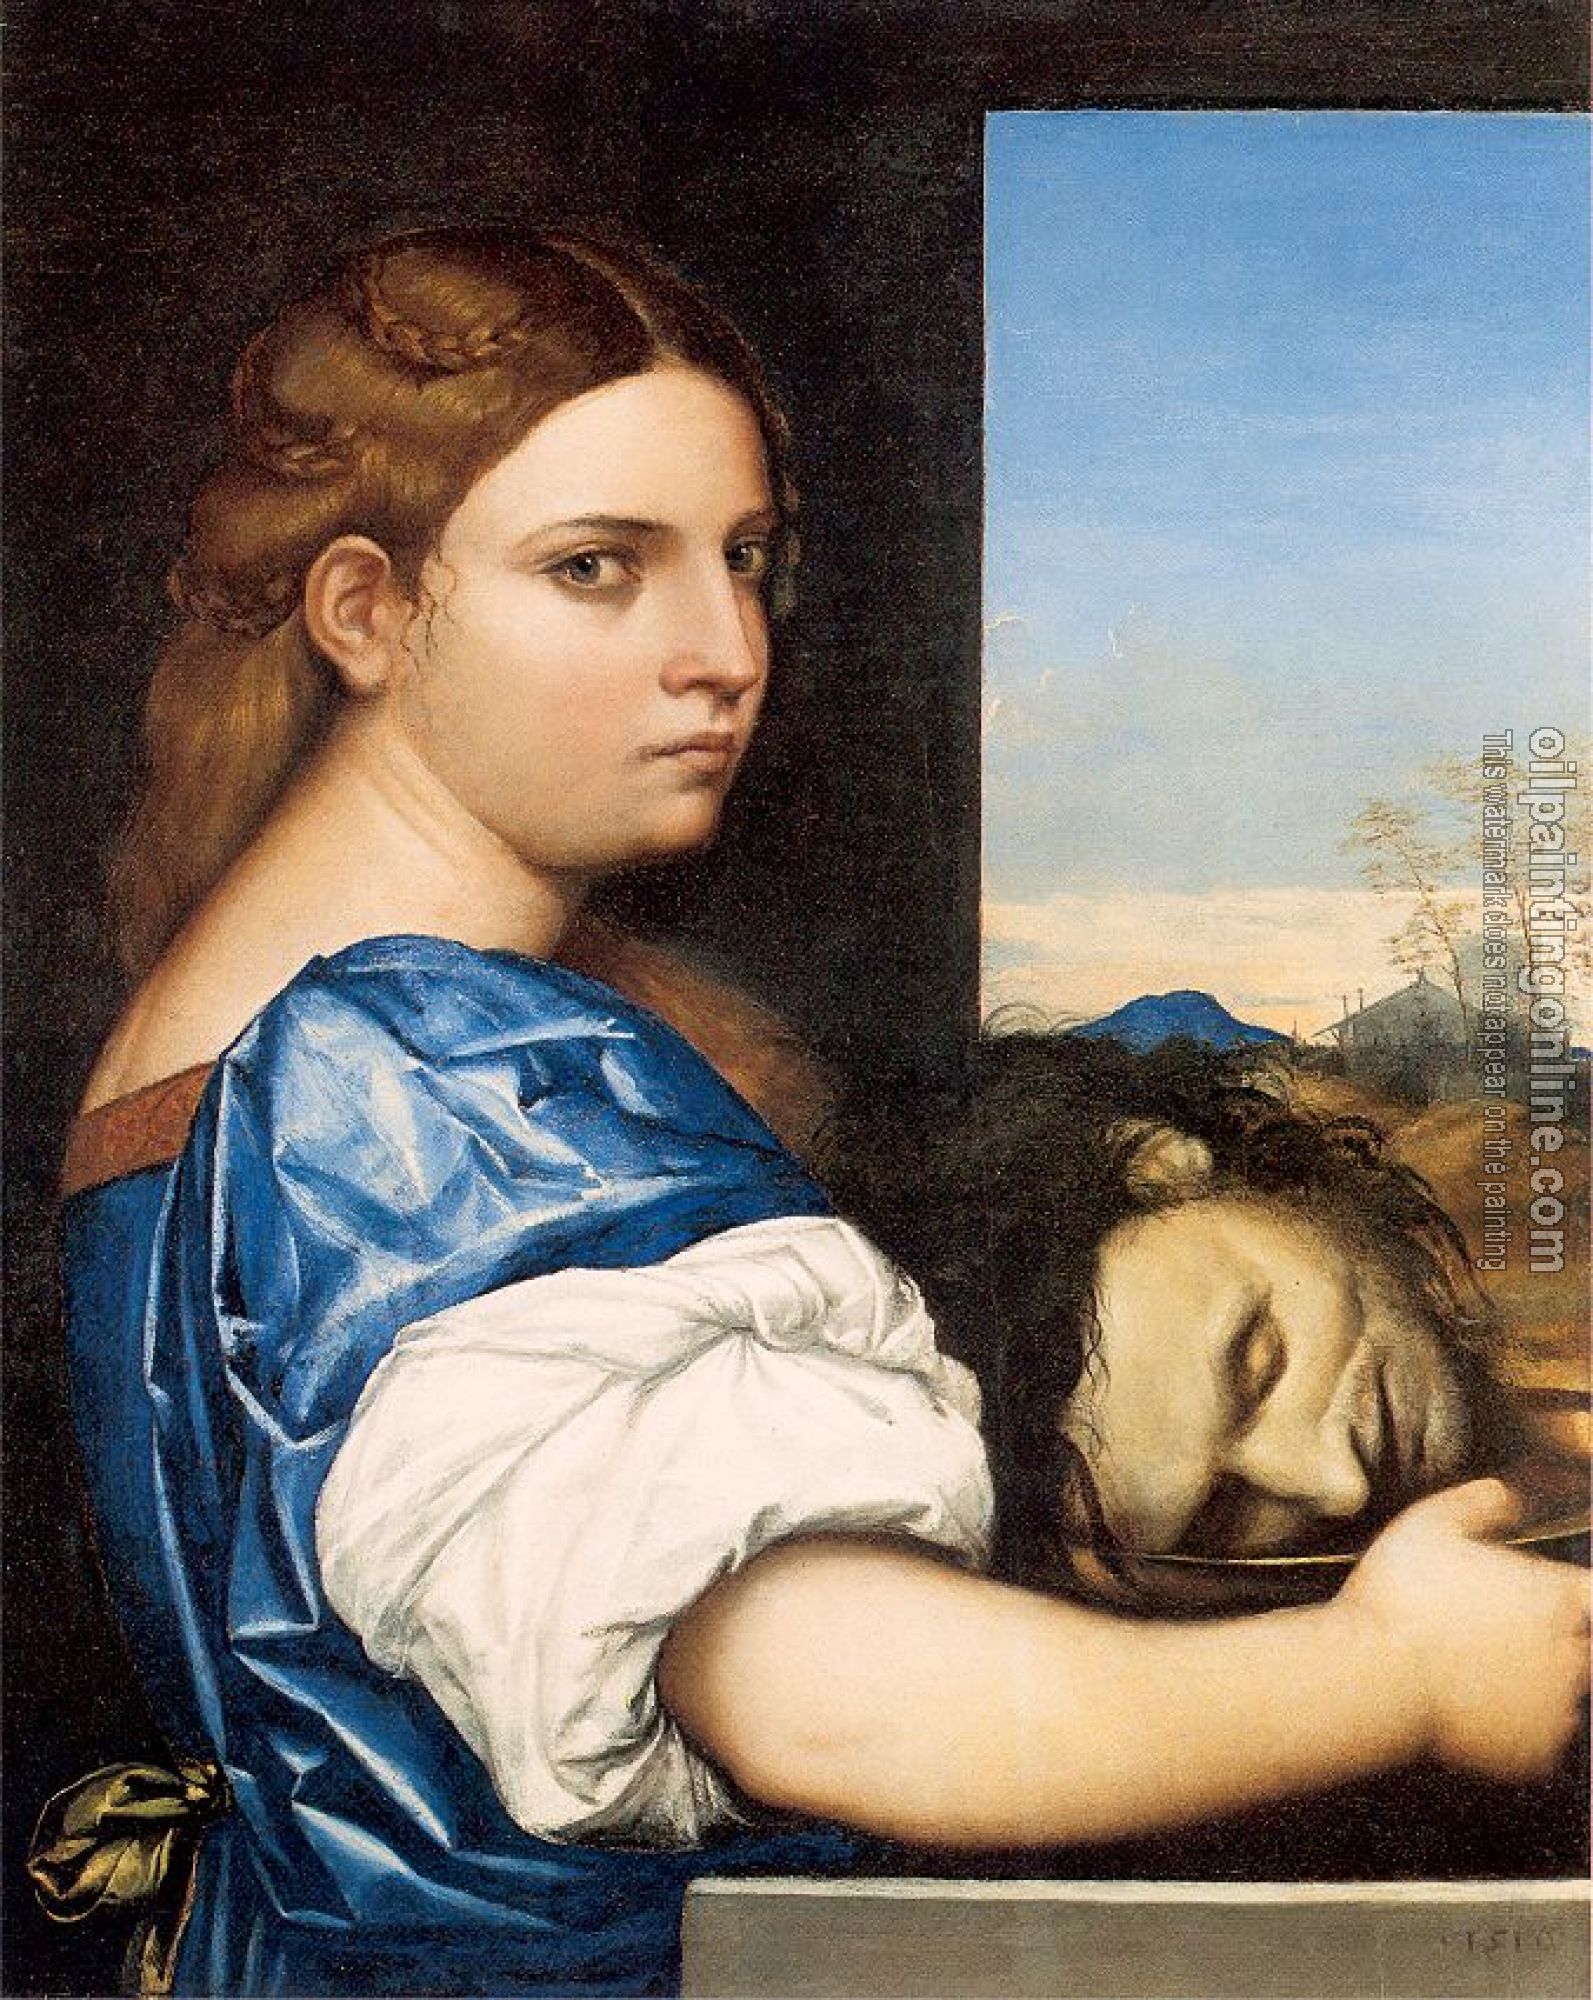 Piombo, Sebastiano del - Salome with the Head of John the Baptist